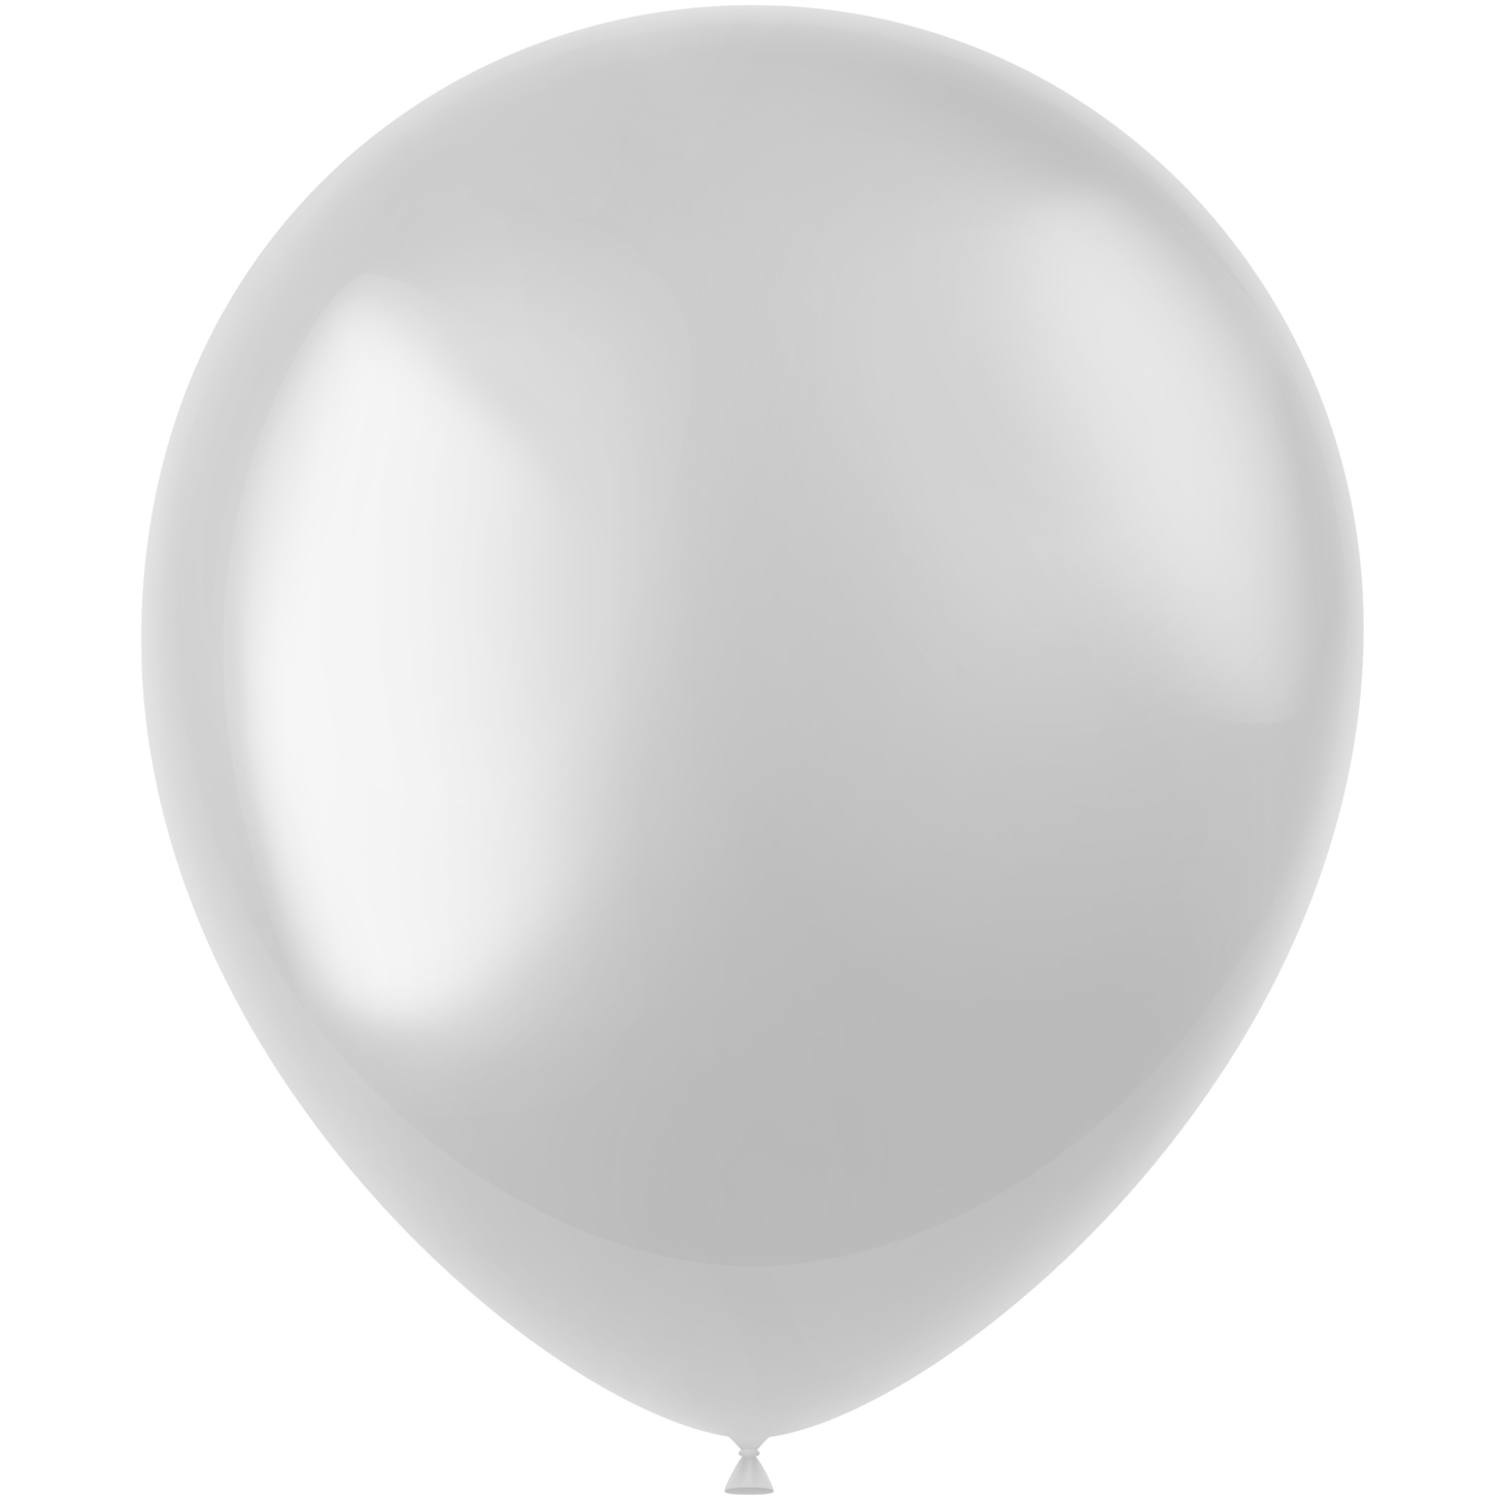 Meetbaar residentie Zwerver Witte Ballonnen bestellen - Partywinkel